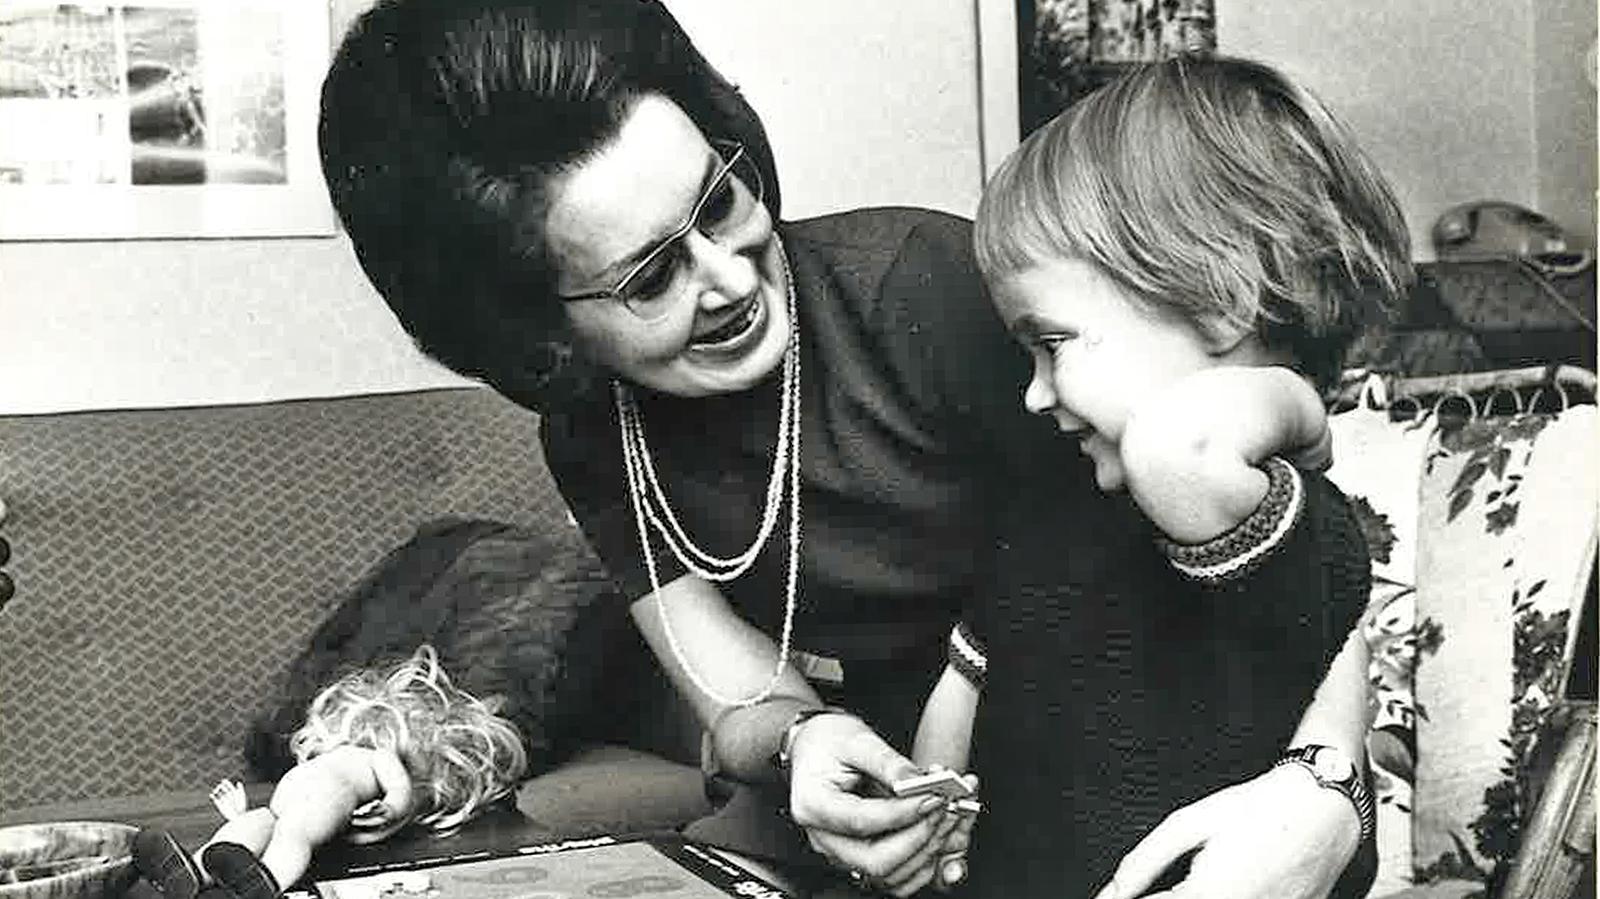 Mustavalkoisessa kuvassa Leena katsoo hymyillen pientä tyttöä, toinen käsi tytön ympärillä ja toisessa kädessä kohonumeropelin palanen.